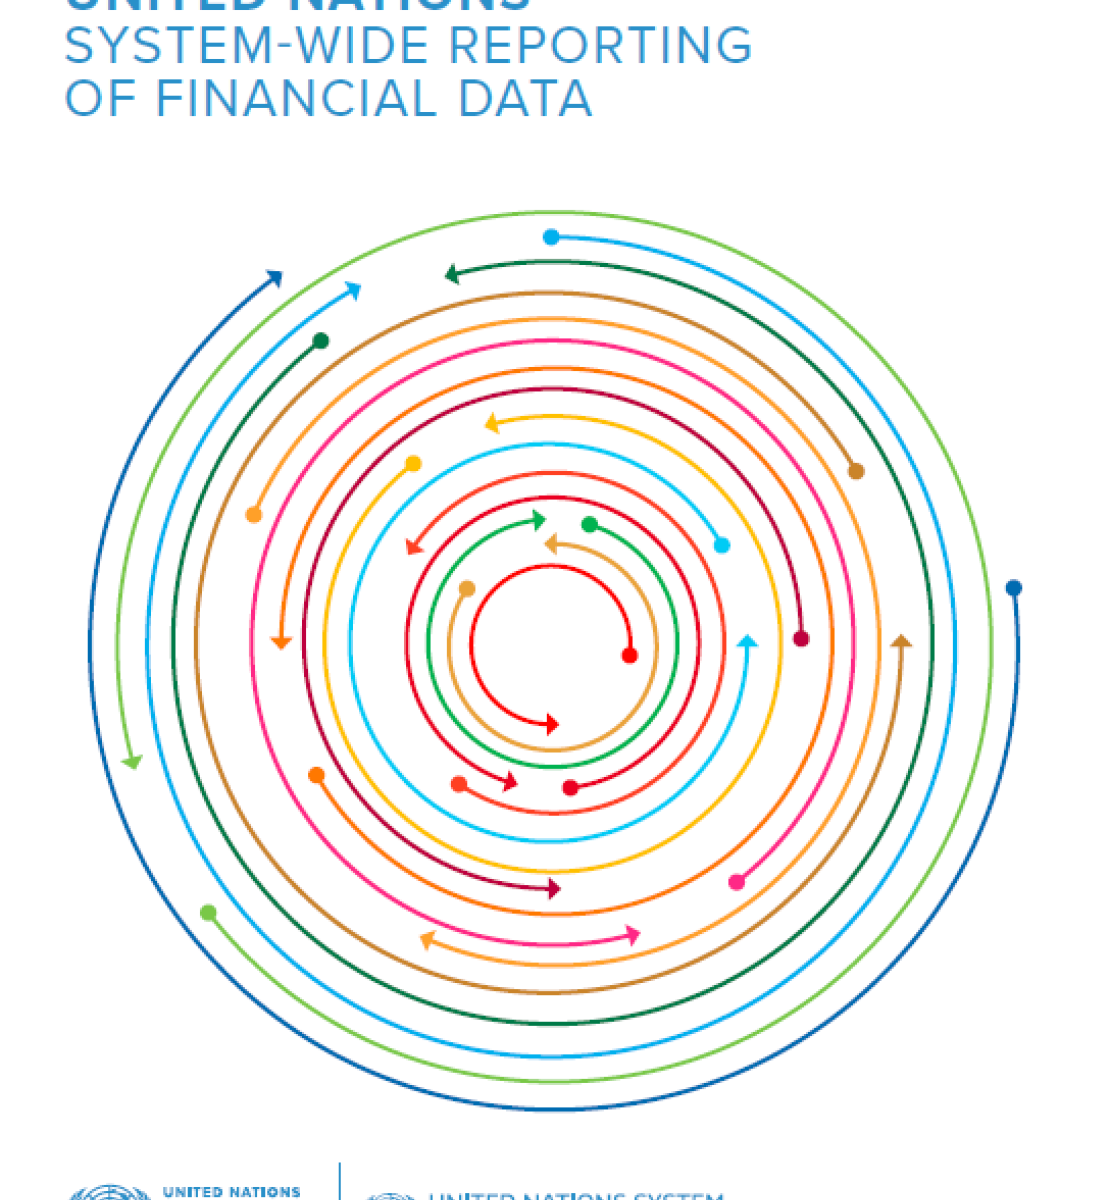 Estándares de datos para la presentación de informes de datos financieros en todo el sistema de la ONU